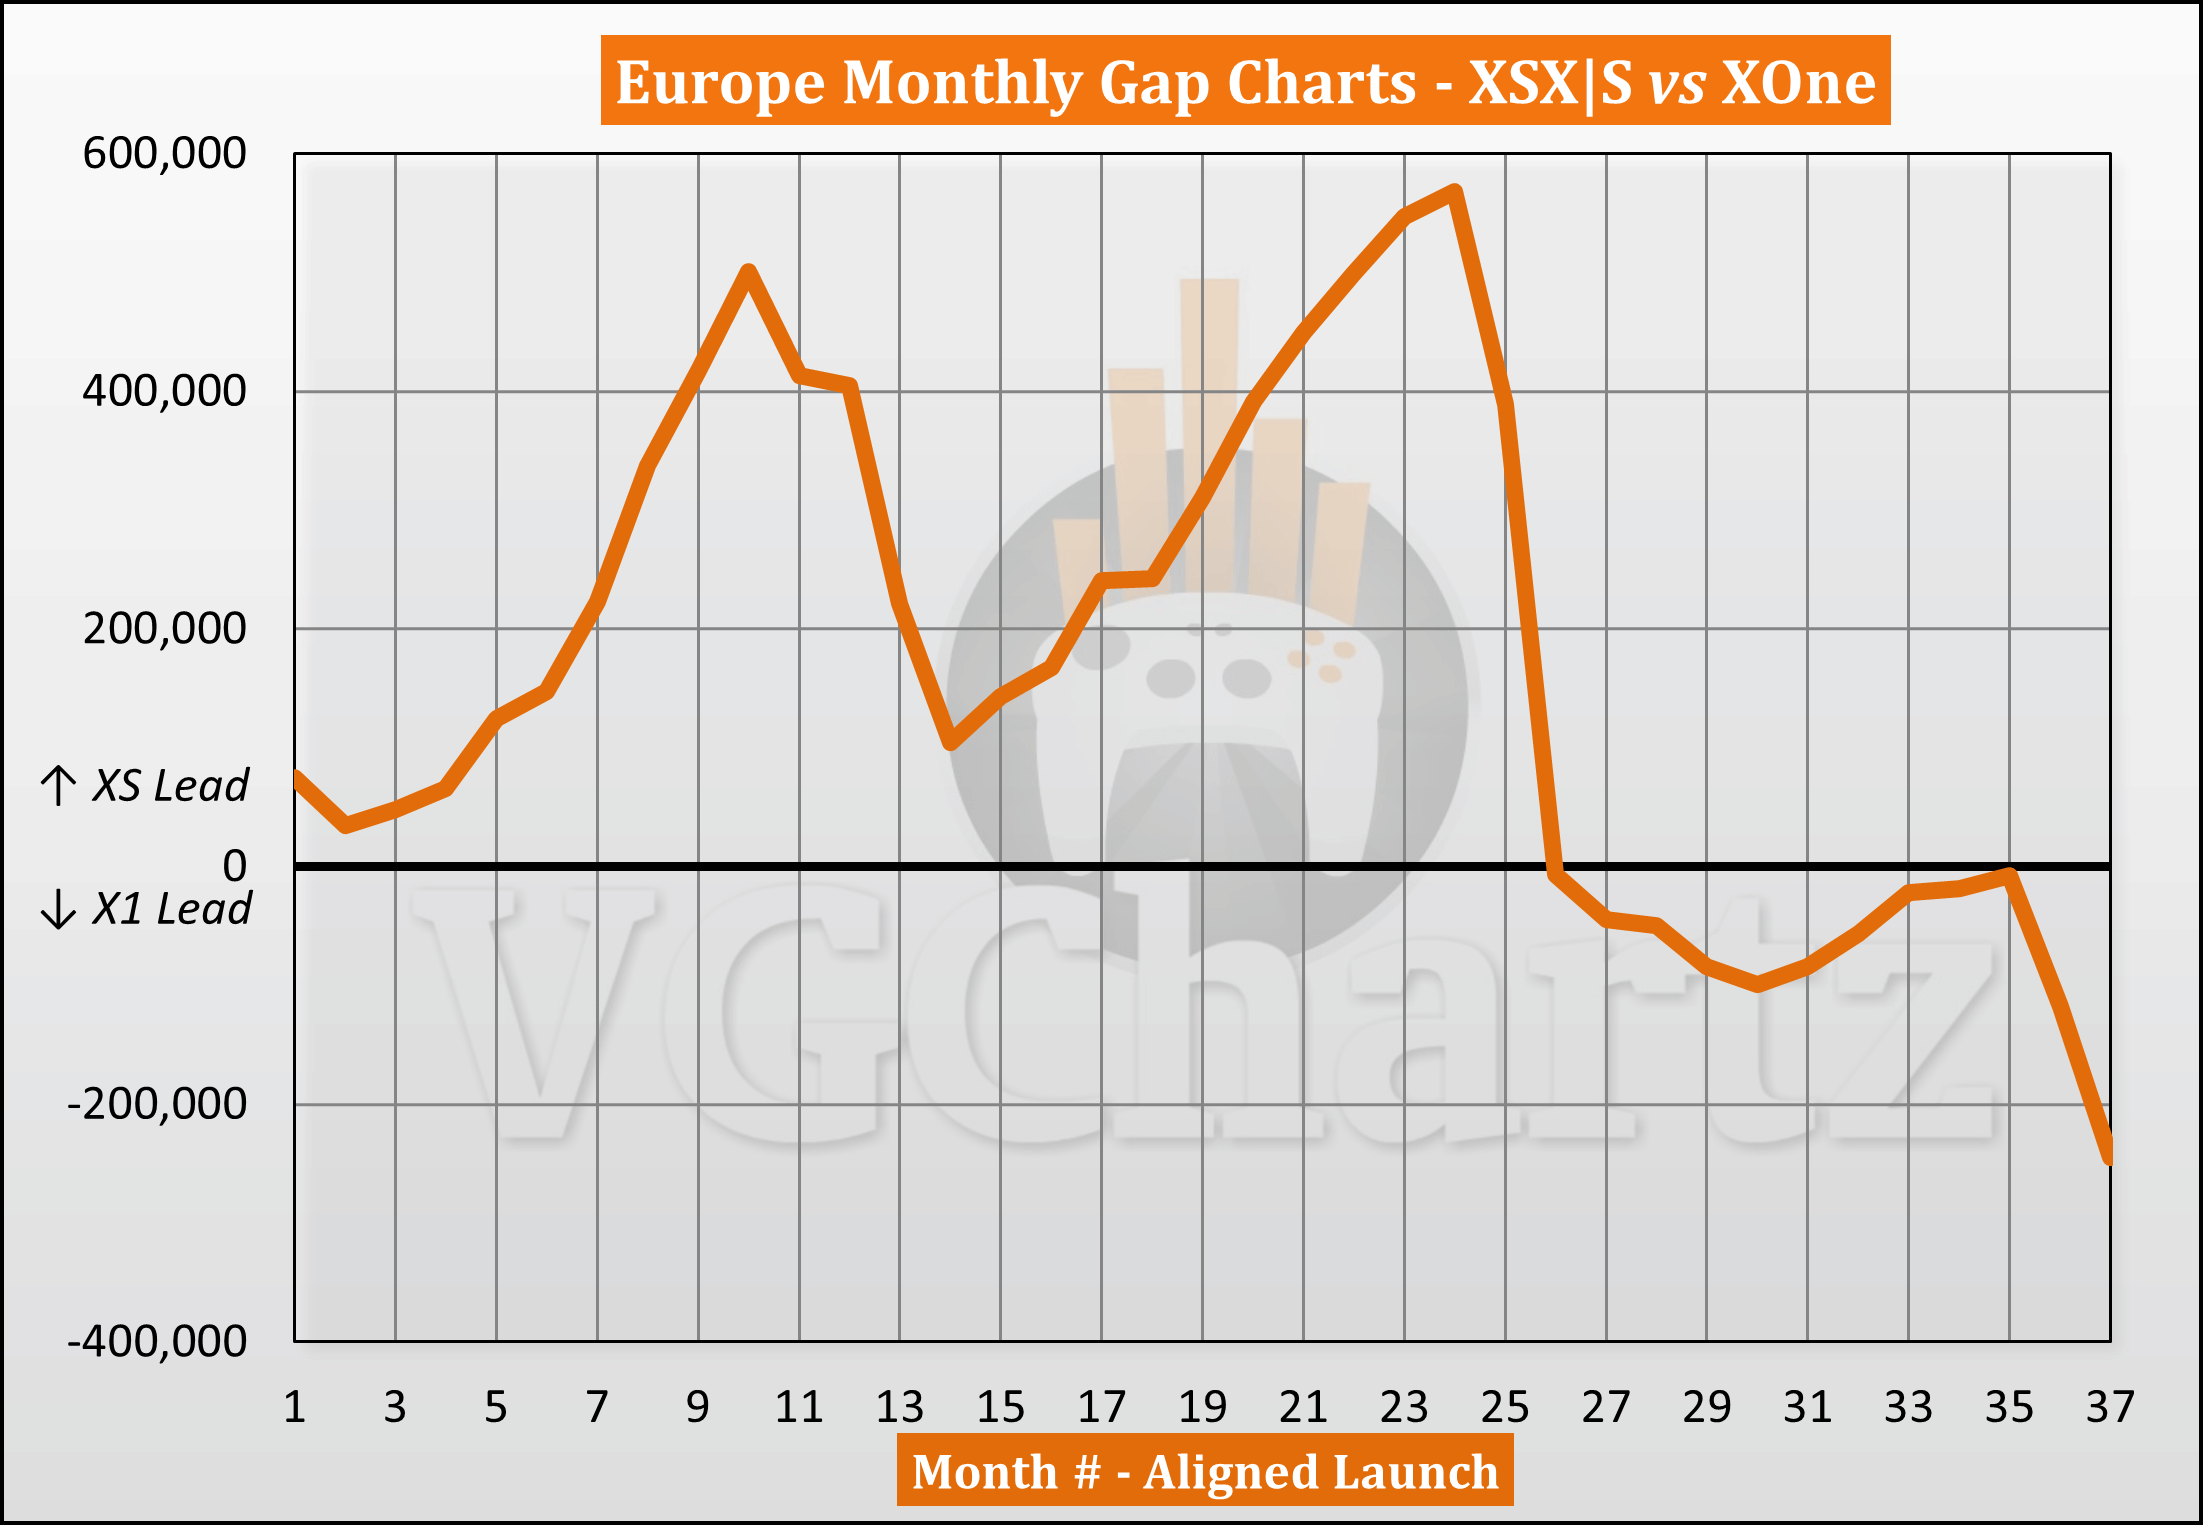 歐洲遊戲市場同期對比：XSX|S銷量落後於Xbox One